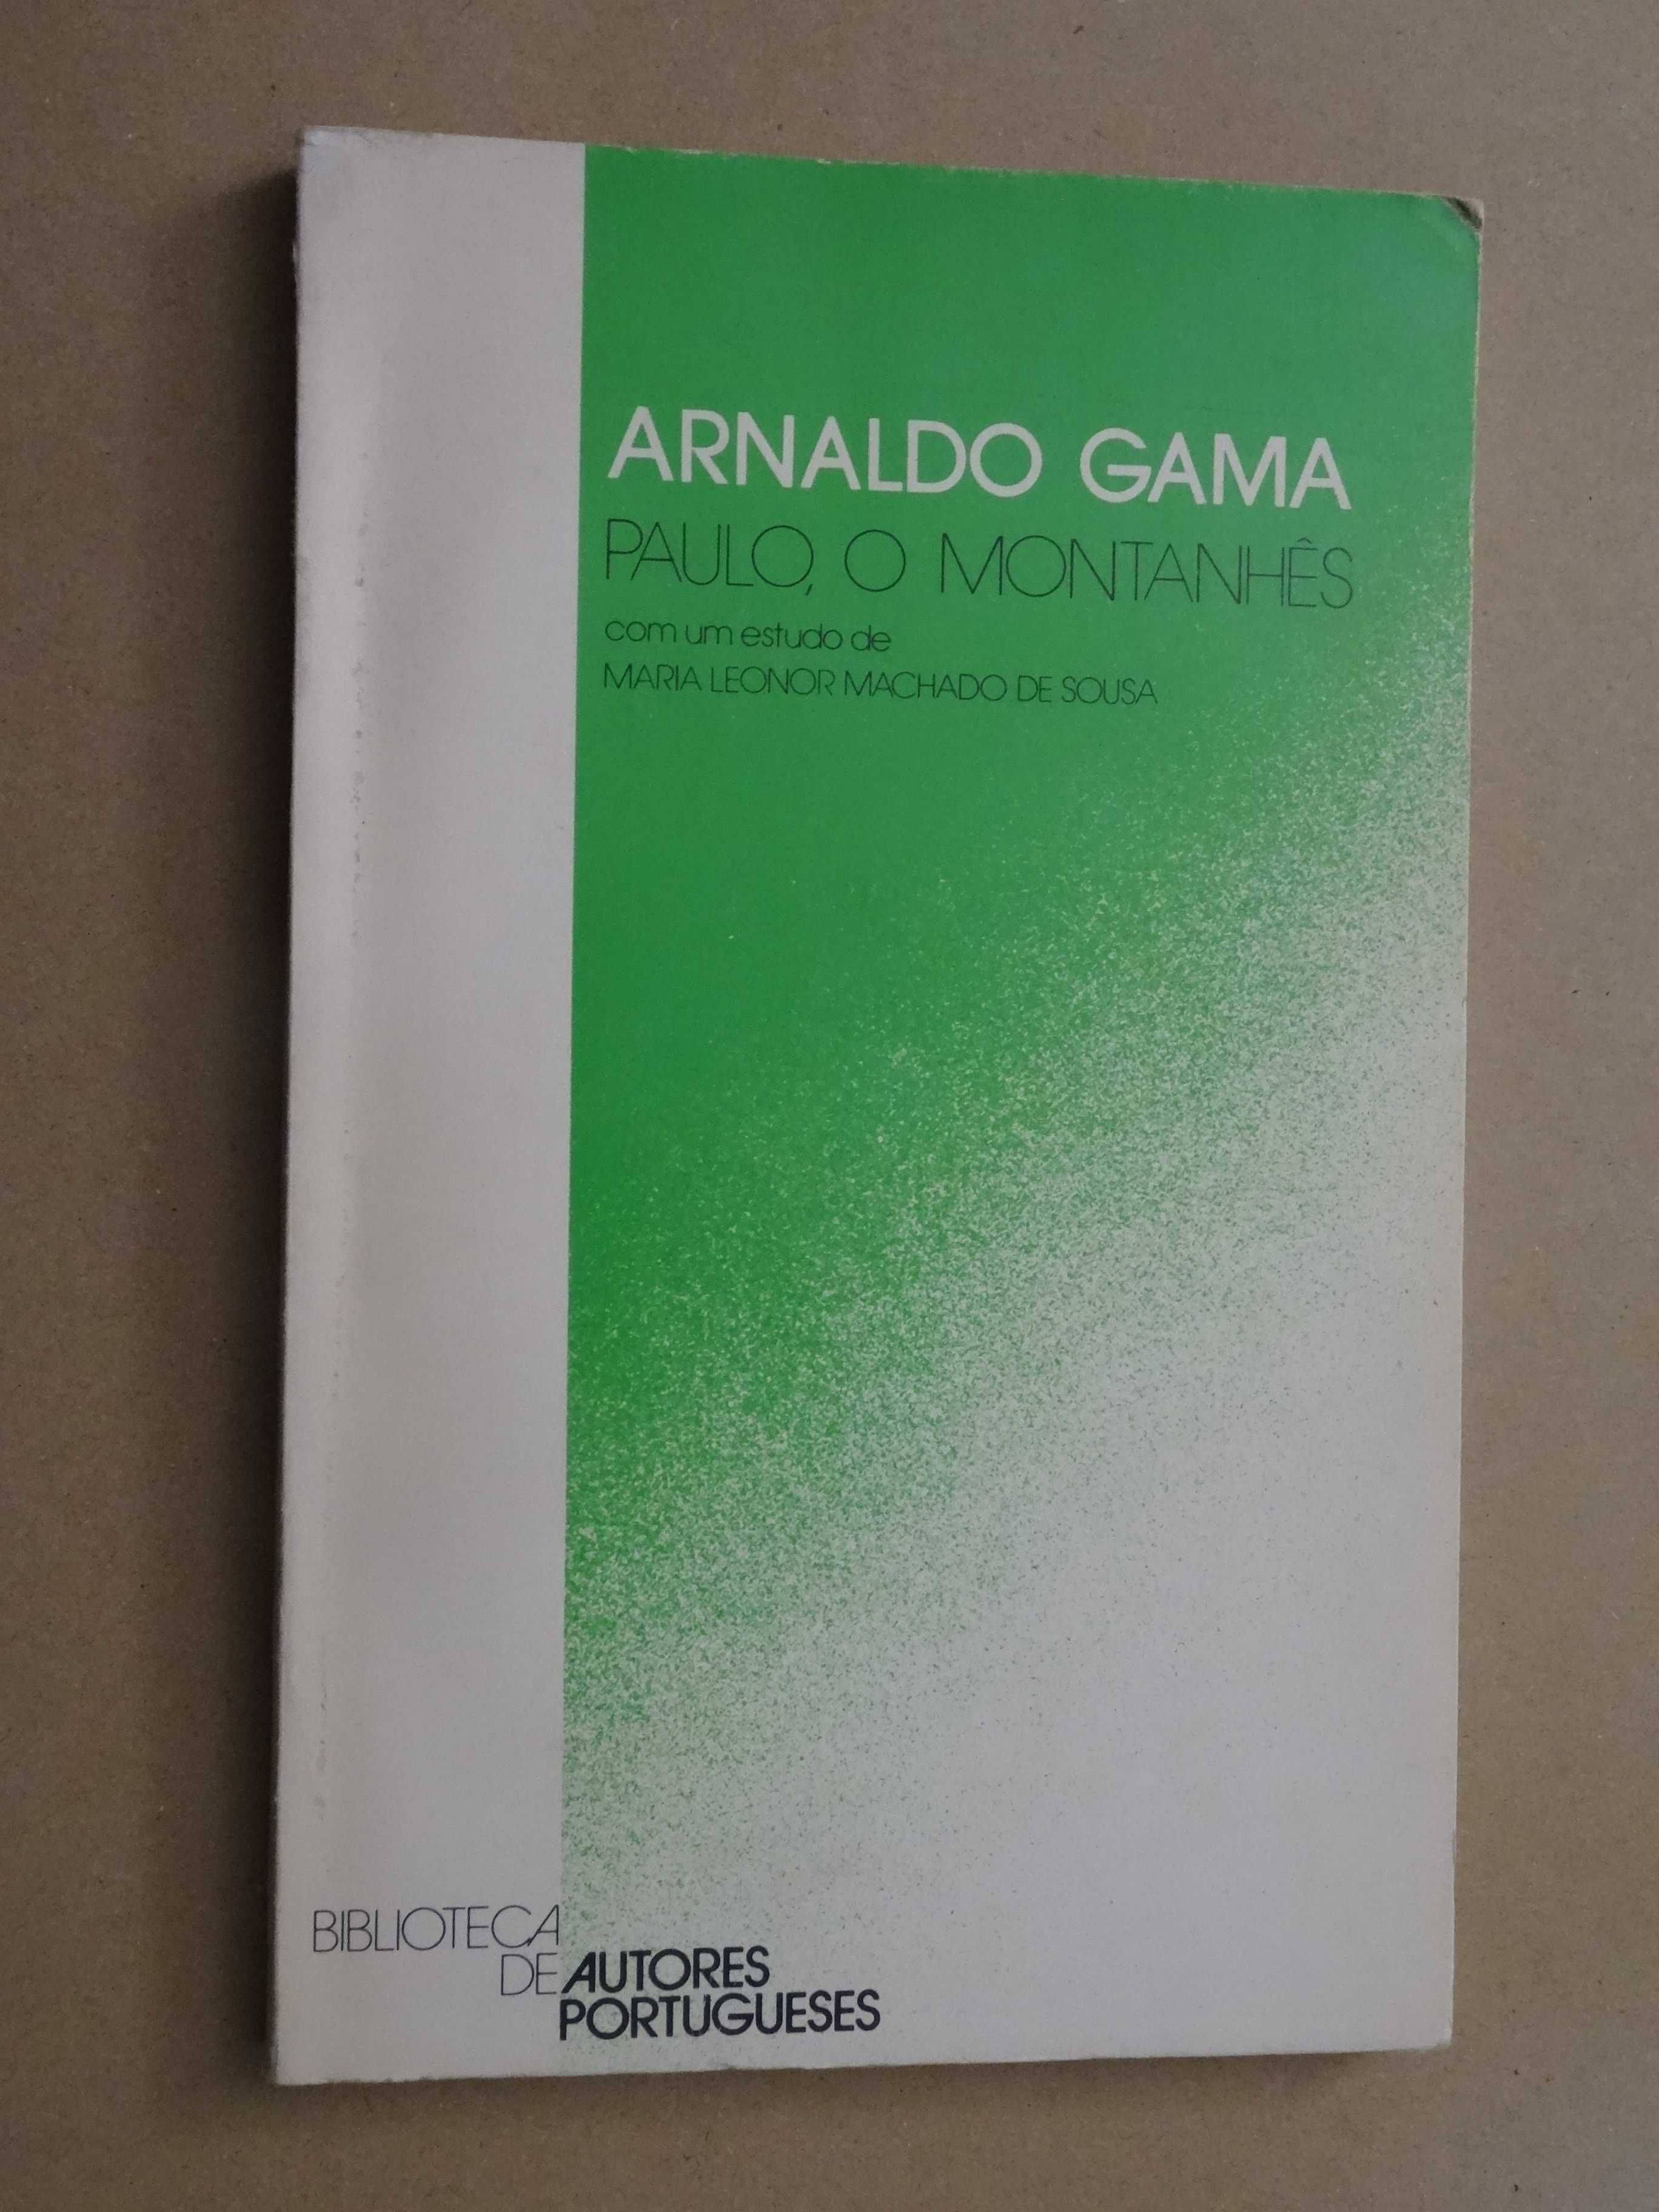 O Montanhês Paulo de Arnaldo Gama